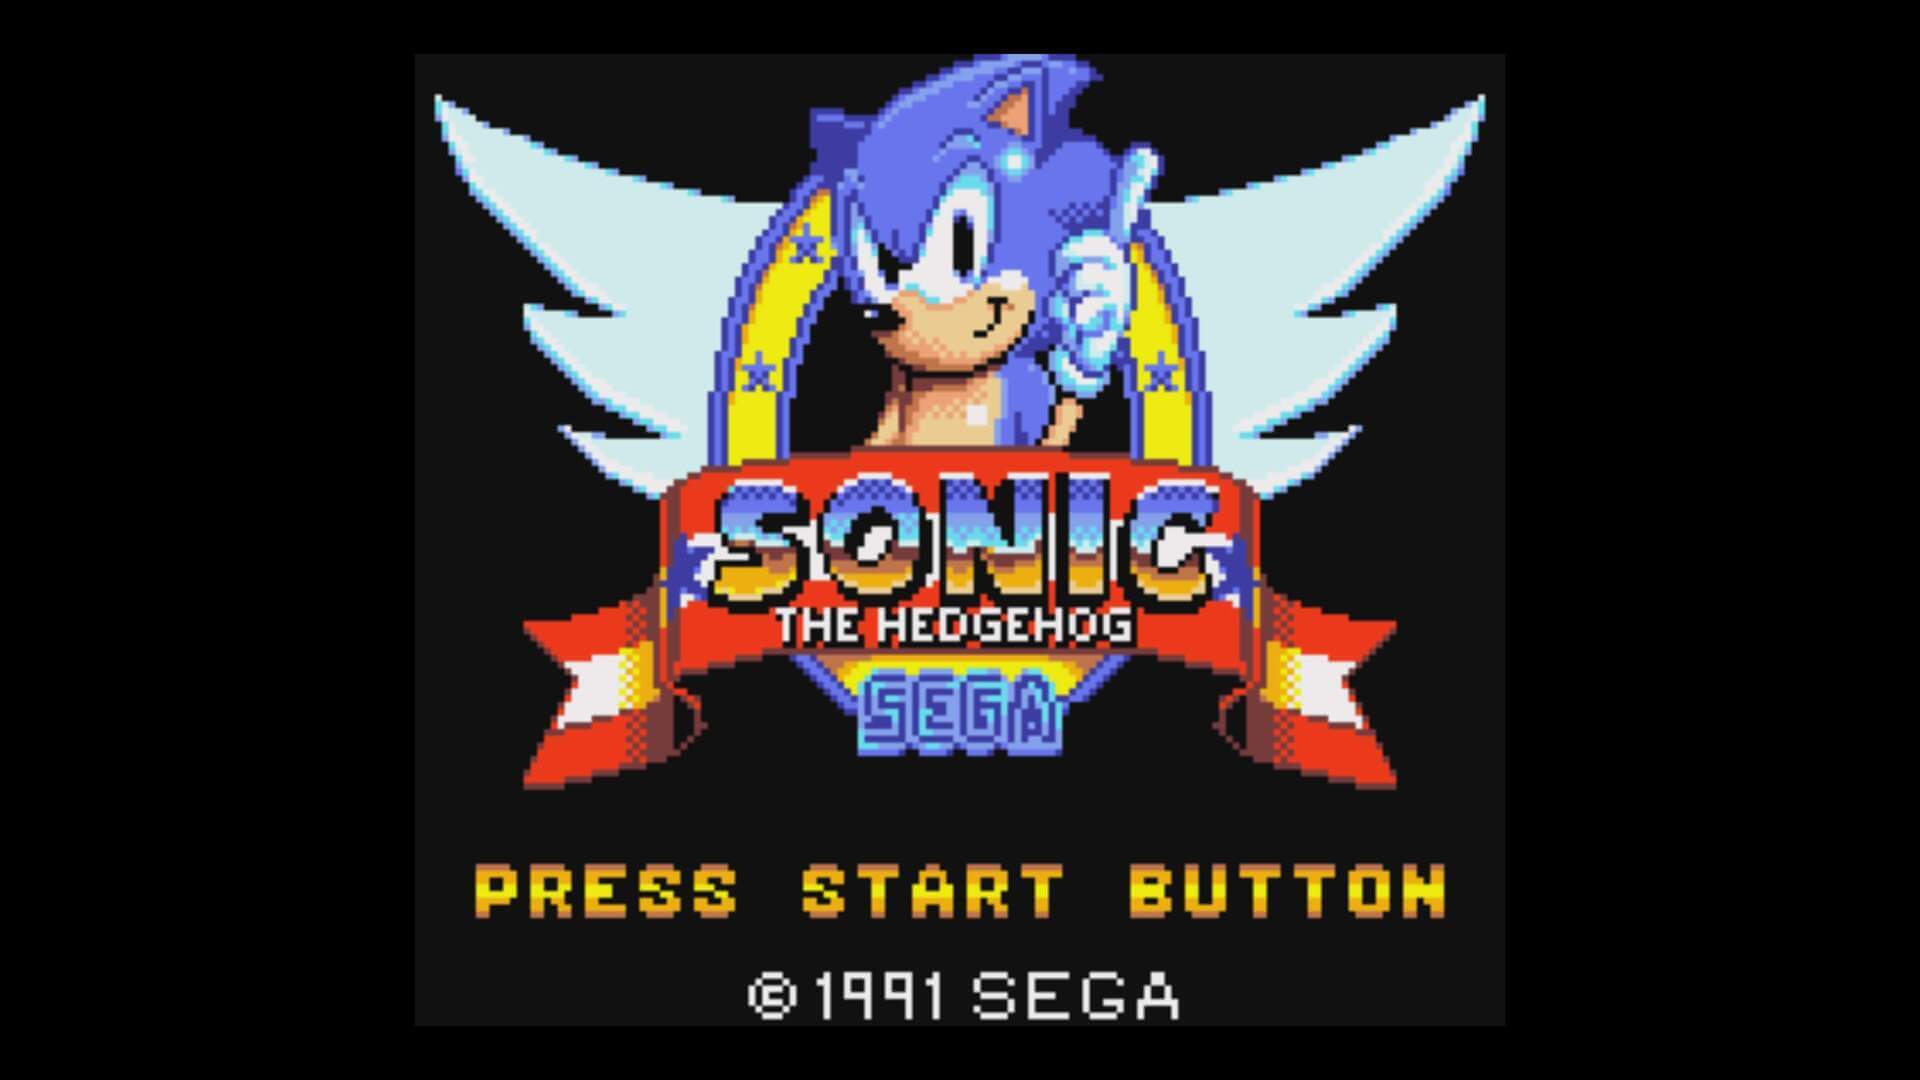 Sonic Chaos (Master System) está em um nível abaixo dos títulos